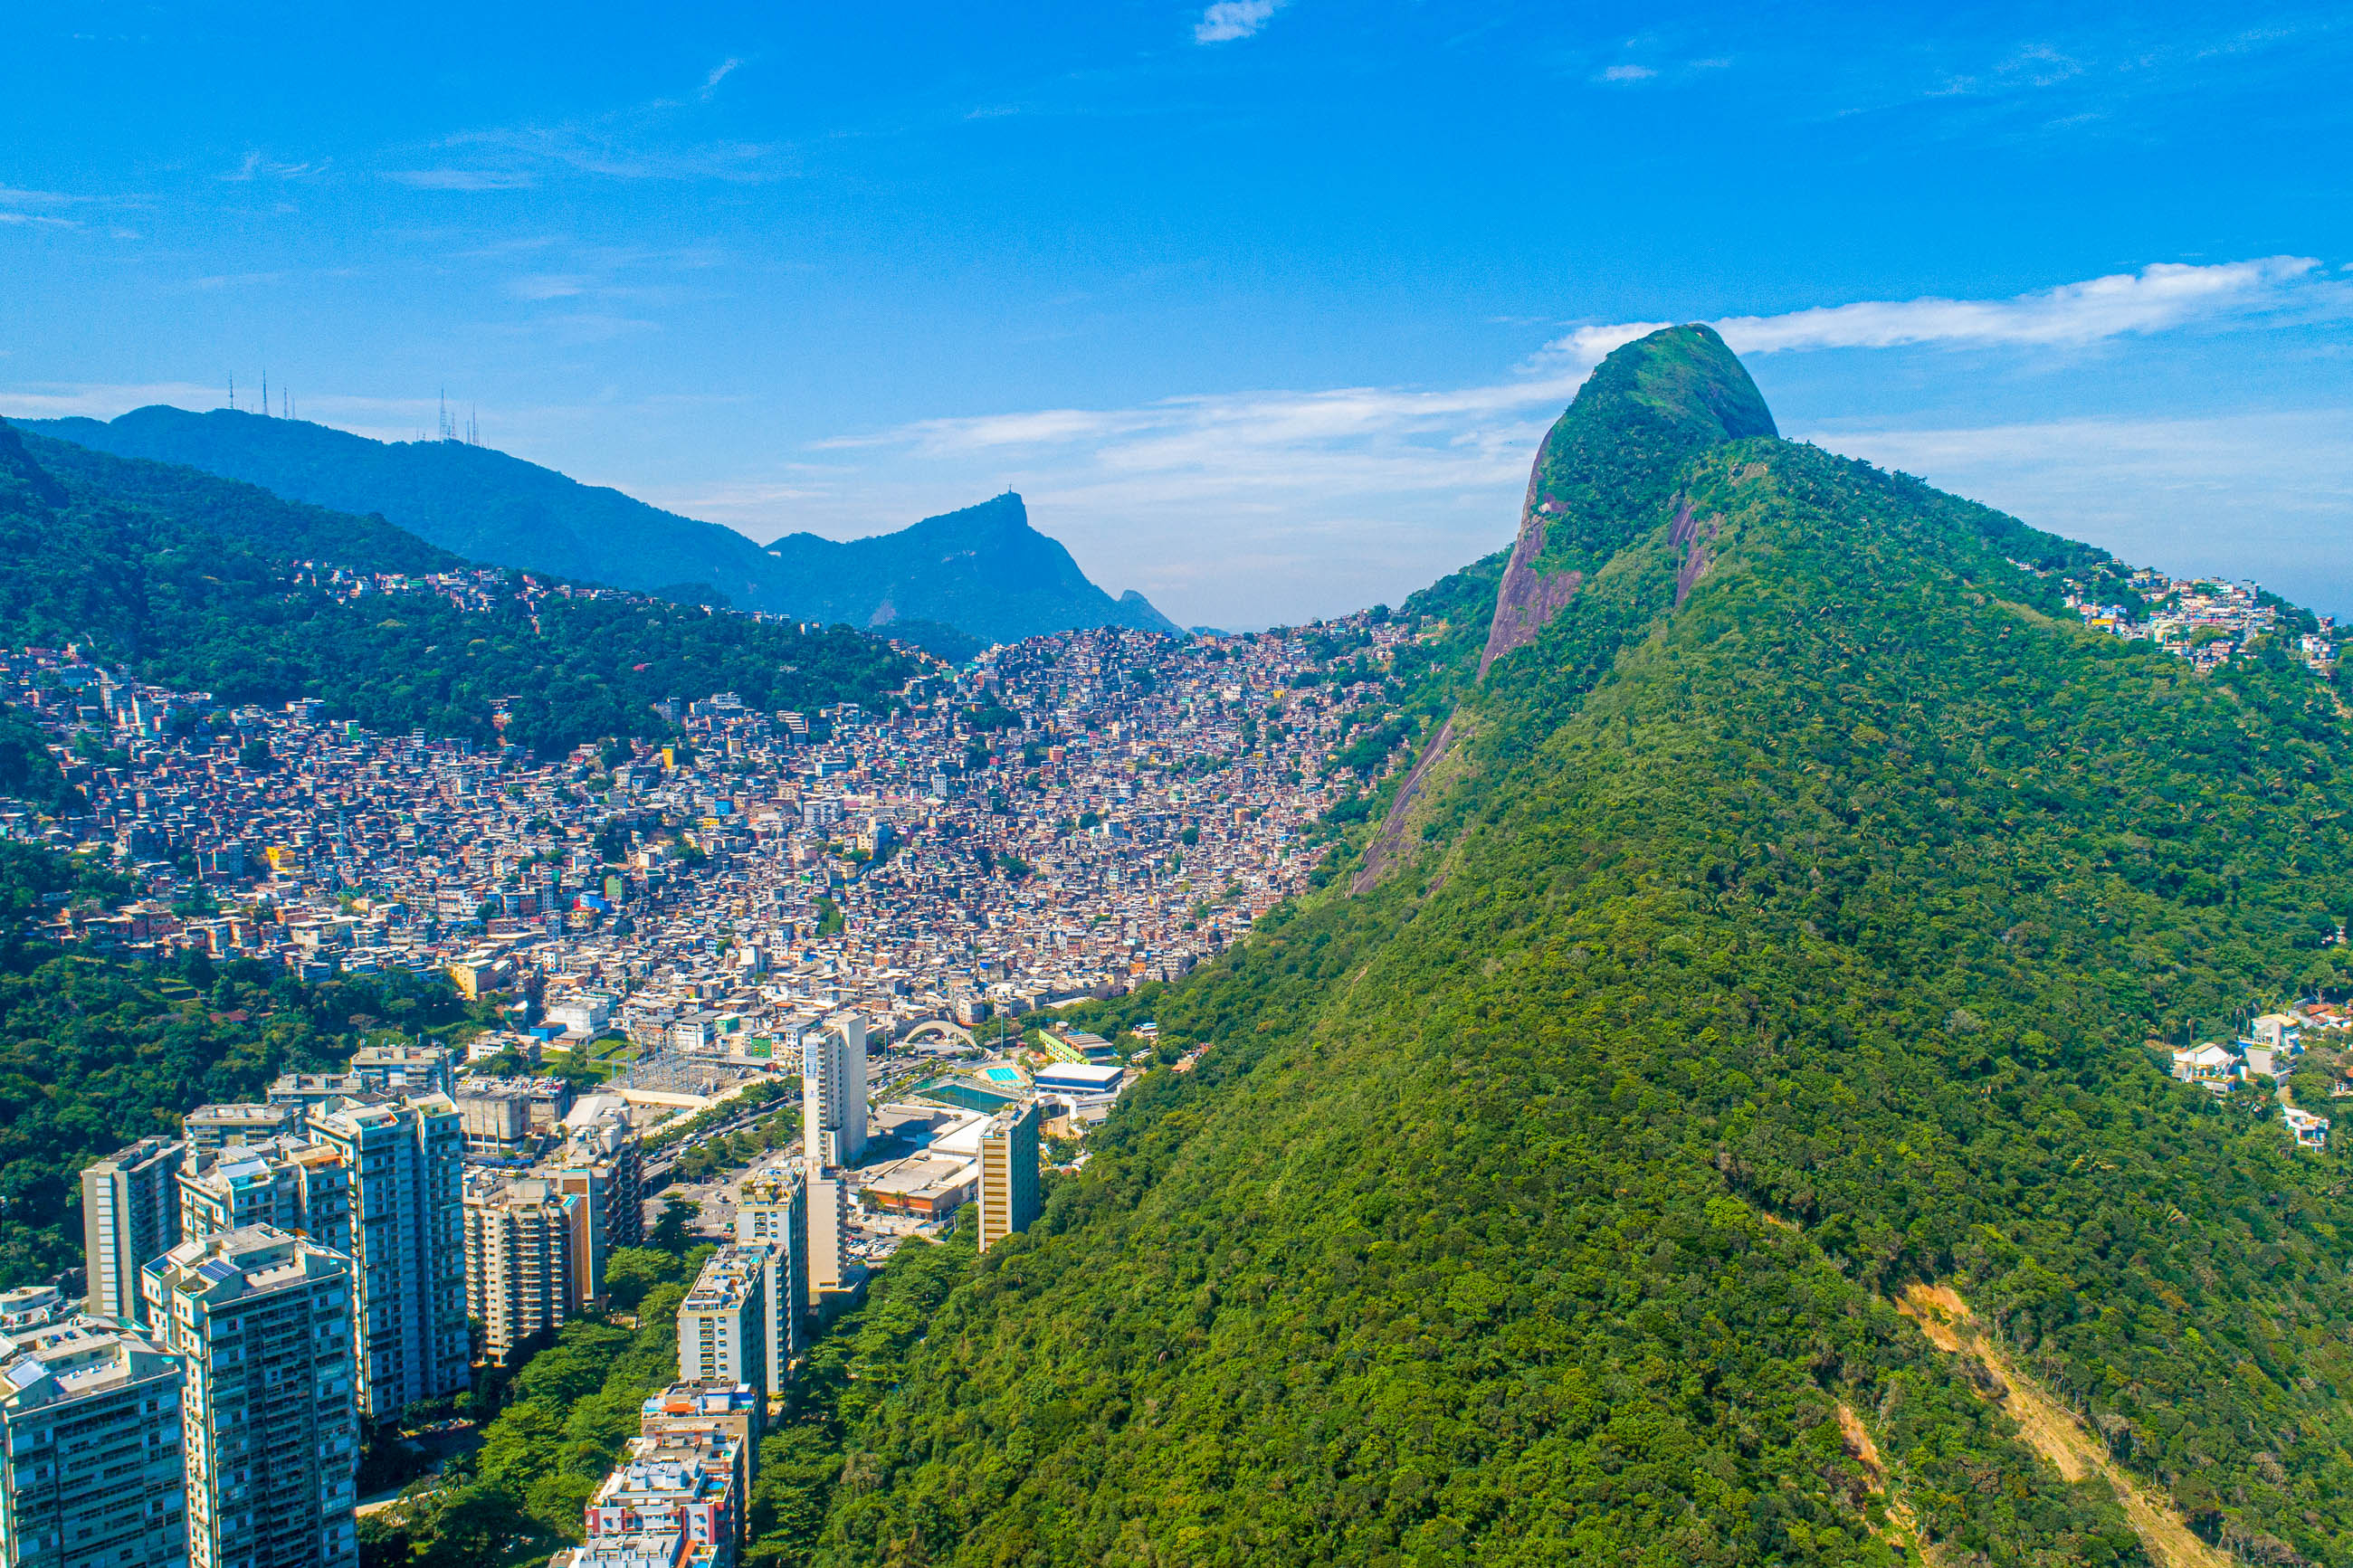 Rio De Janeiro, Favelas in Brazil, Rio de Janeiro slums, Frank's travelbox, 2600x1740 HD Desktop